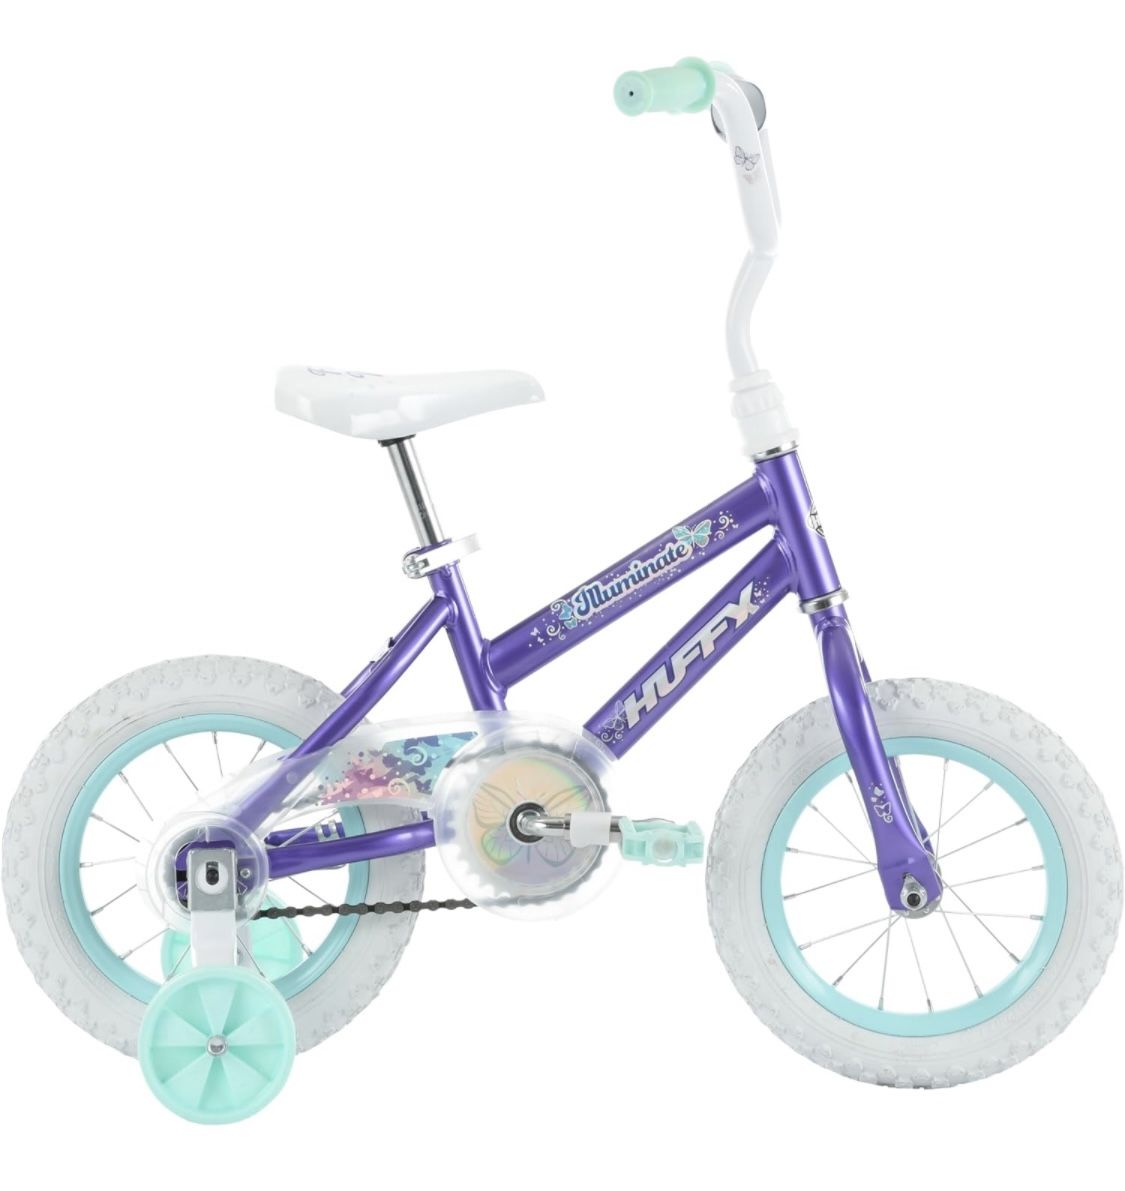 Huffy Illuminate 12” Wheel With Training Wheels Kids Bike